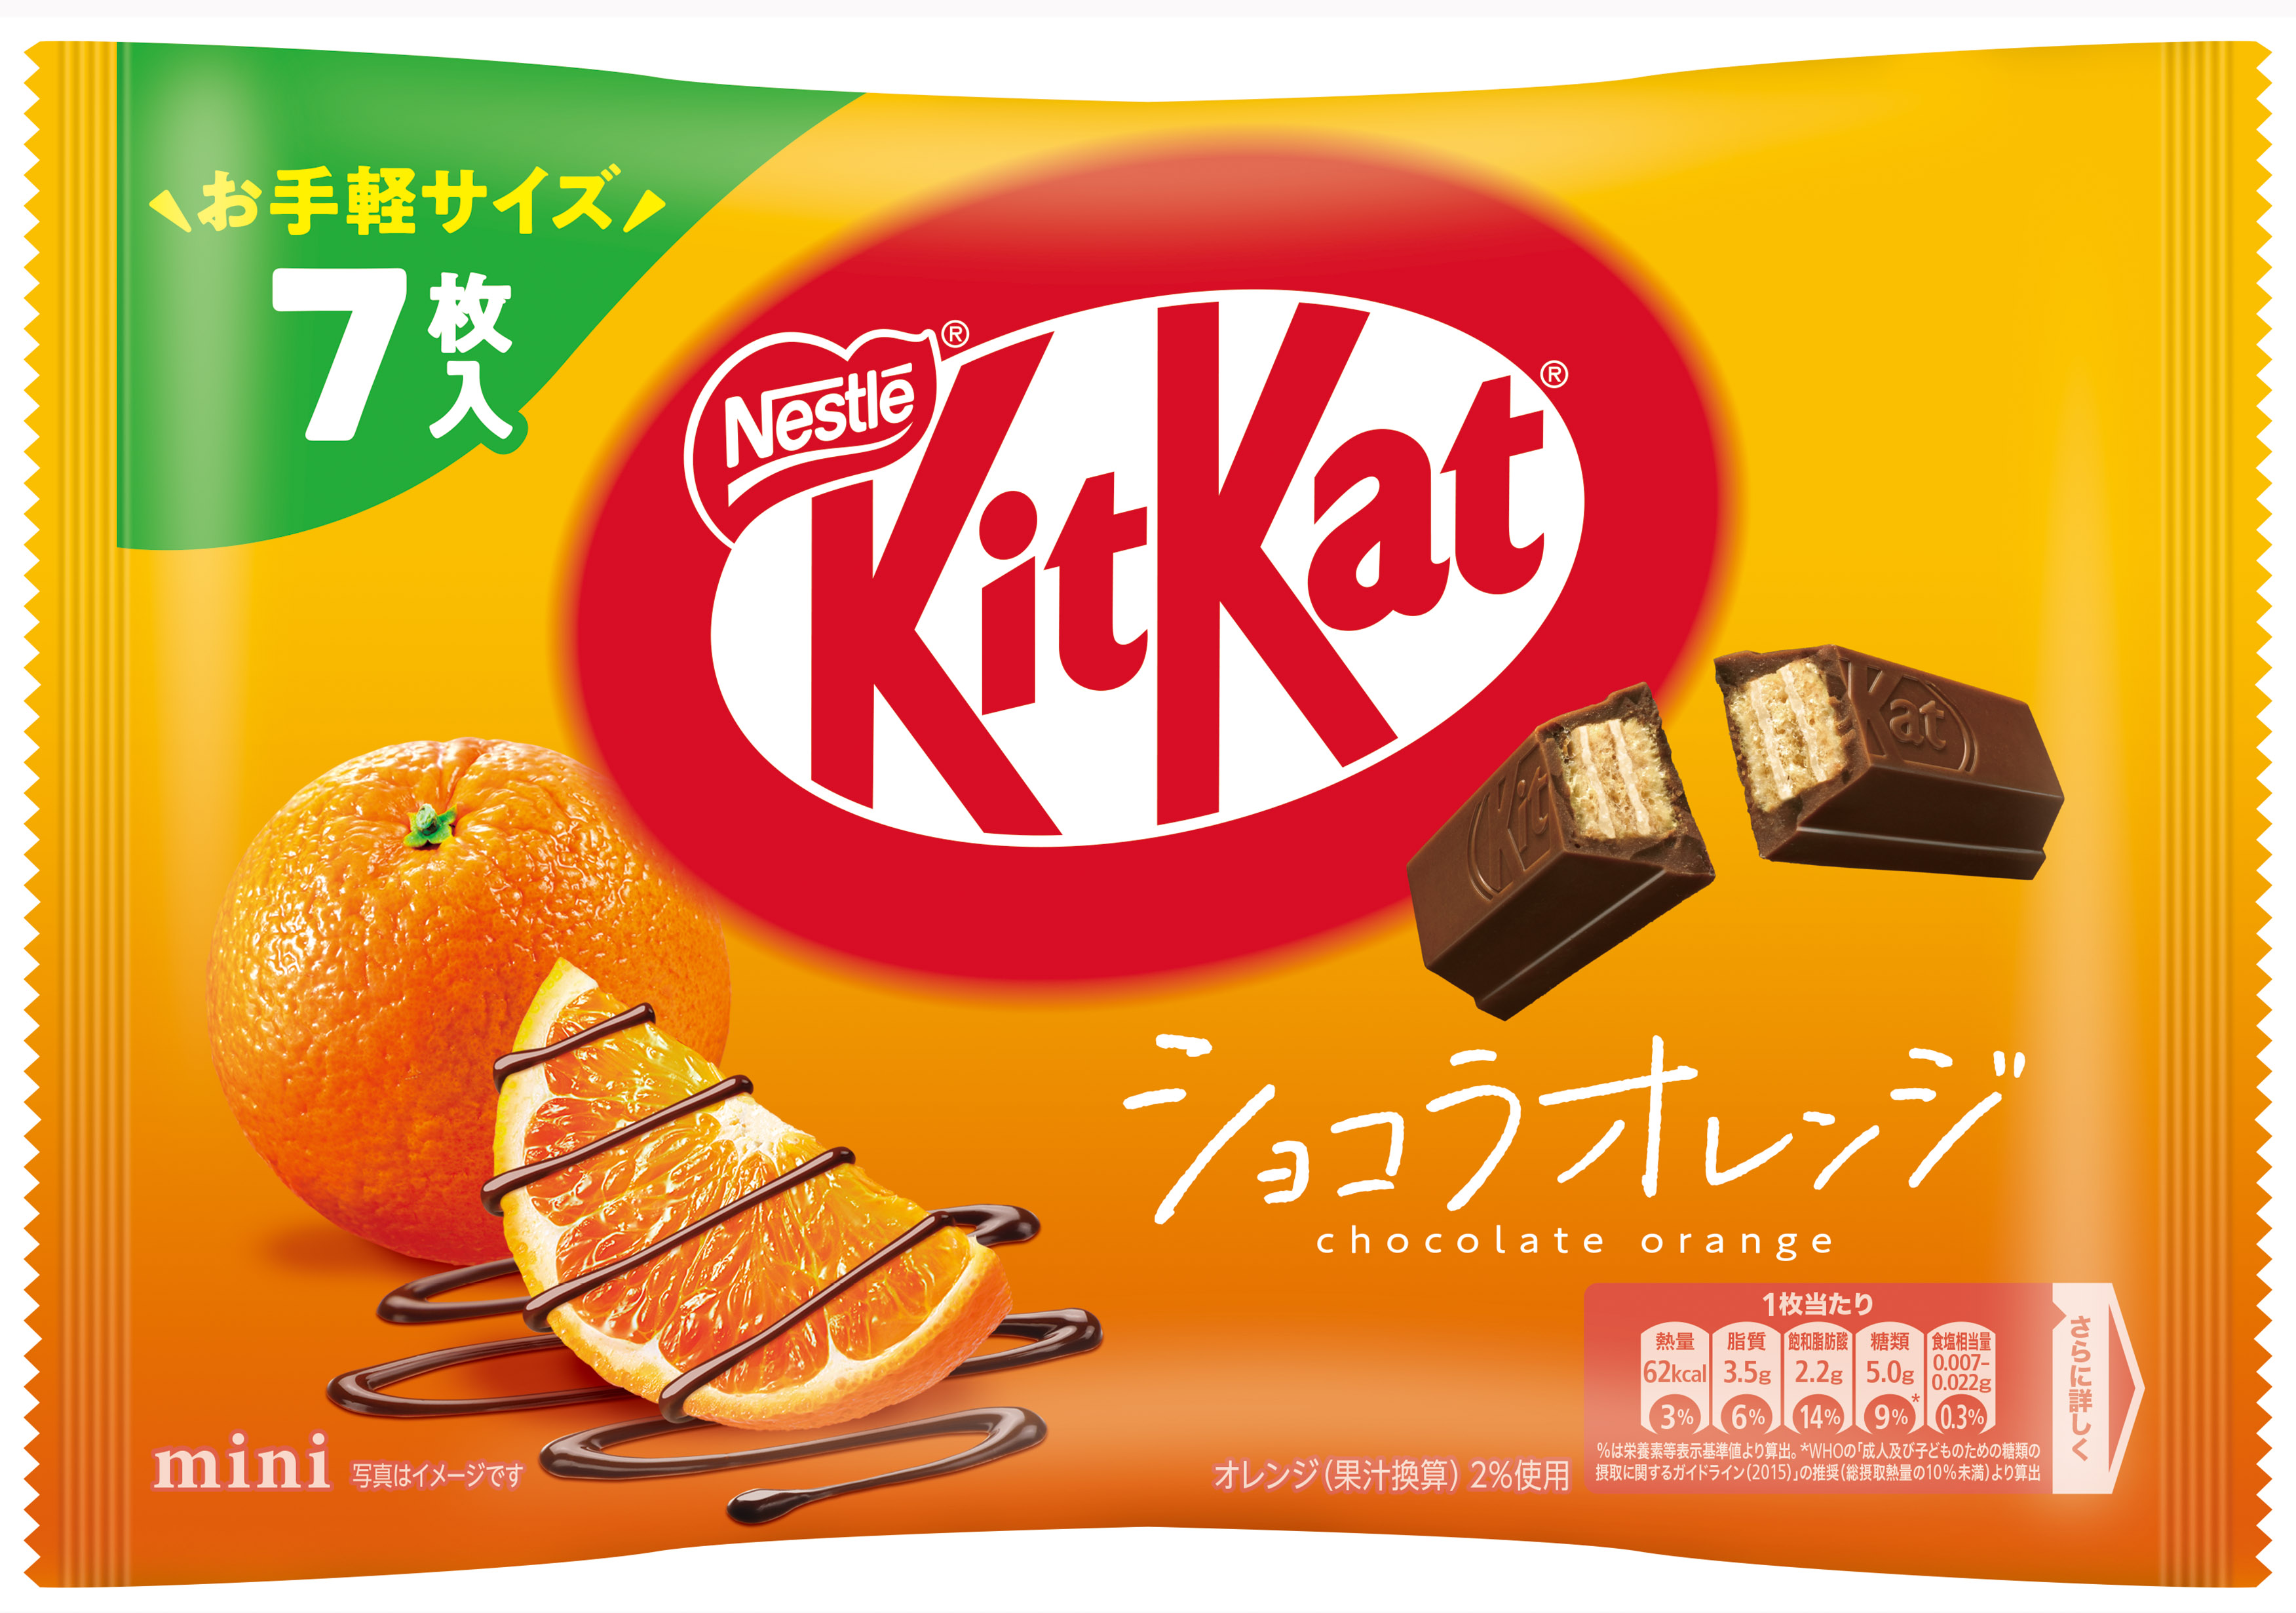 7枚 キットカット ミニ ショコラオレンジ | ネスレ日本 製品情報サイト